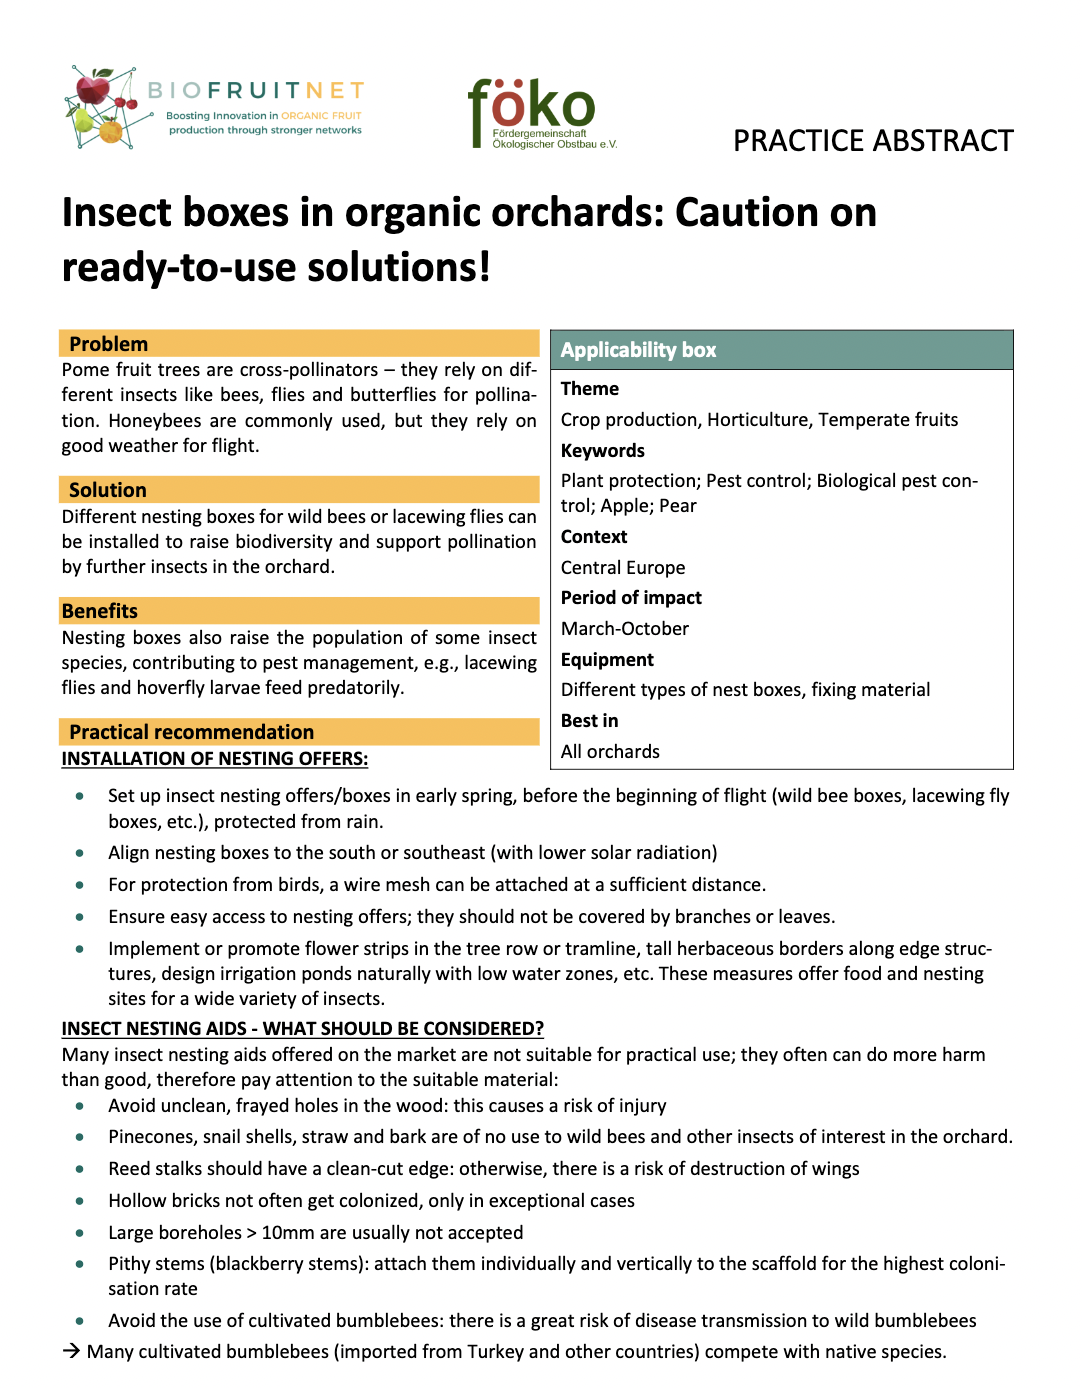 Kukaiņu kastes bioloģiskajos augļu dārzos: Uzmanību attiecībā uz lietošanai gataviem risinājumiem! (BIOFRUITNET prakses kopsavilkums)